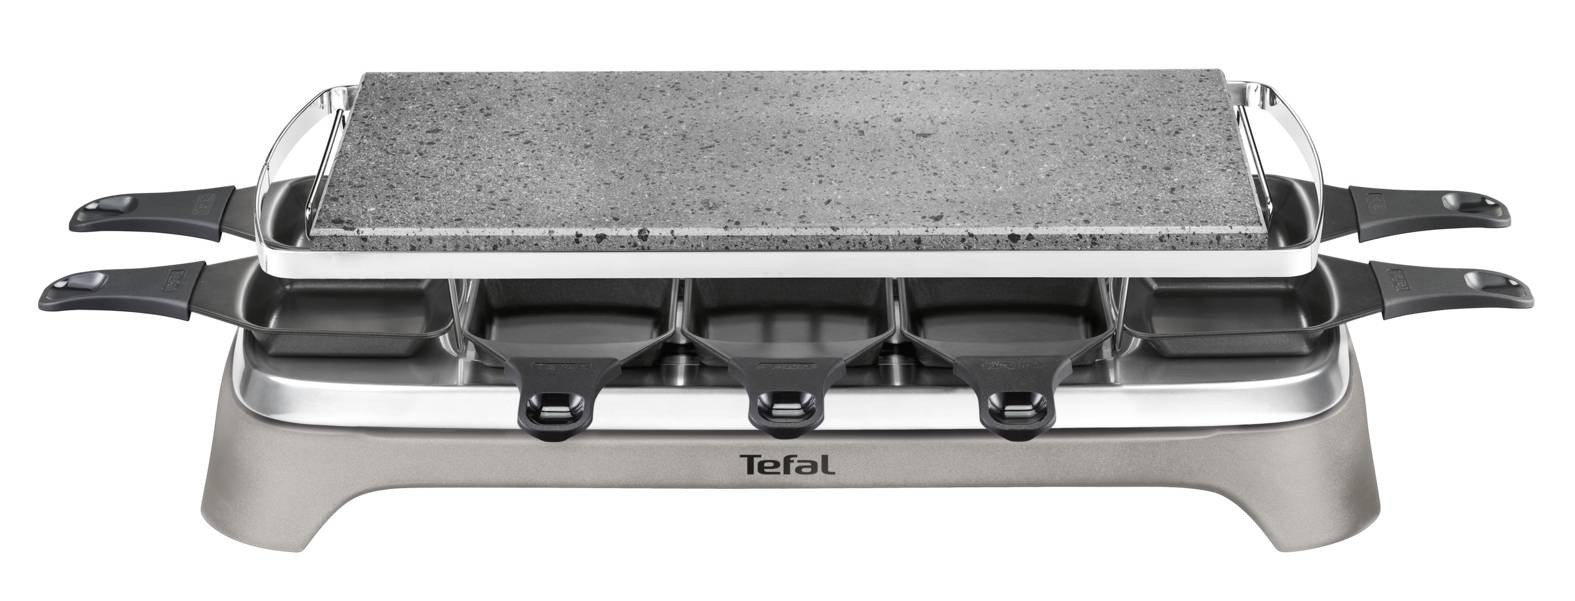 TEFAL Raclette Multifonction Inox & Design 10 coupelles  PR457B12